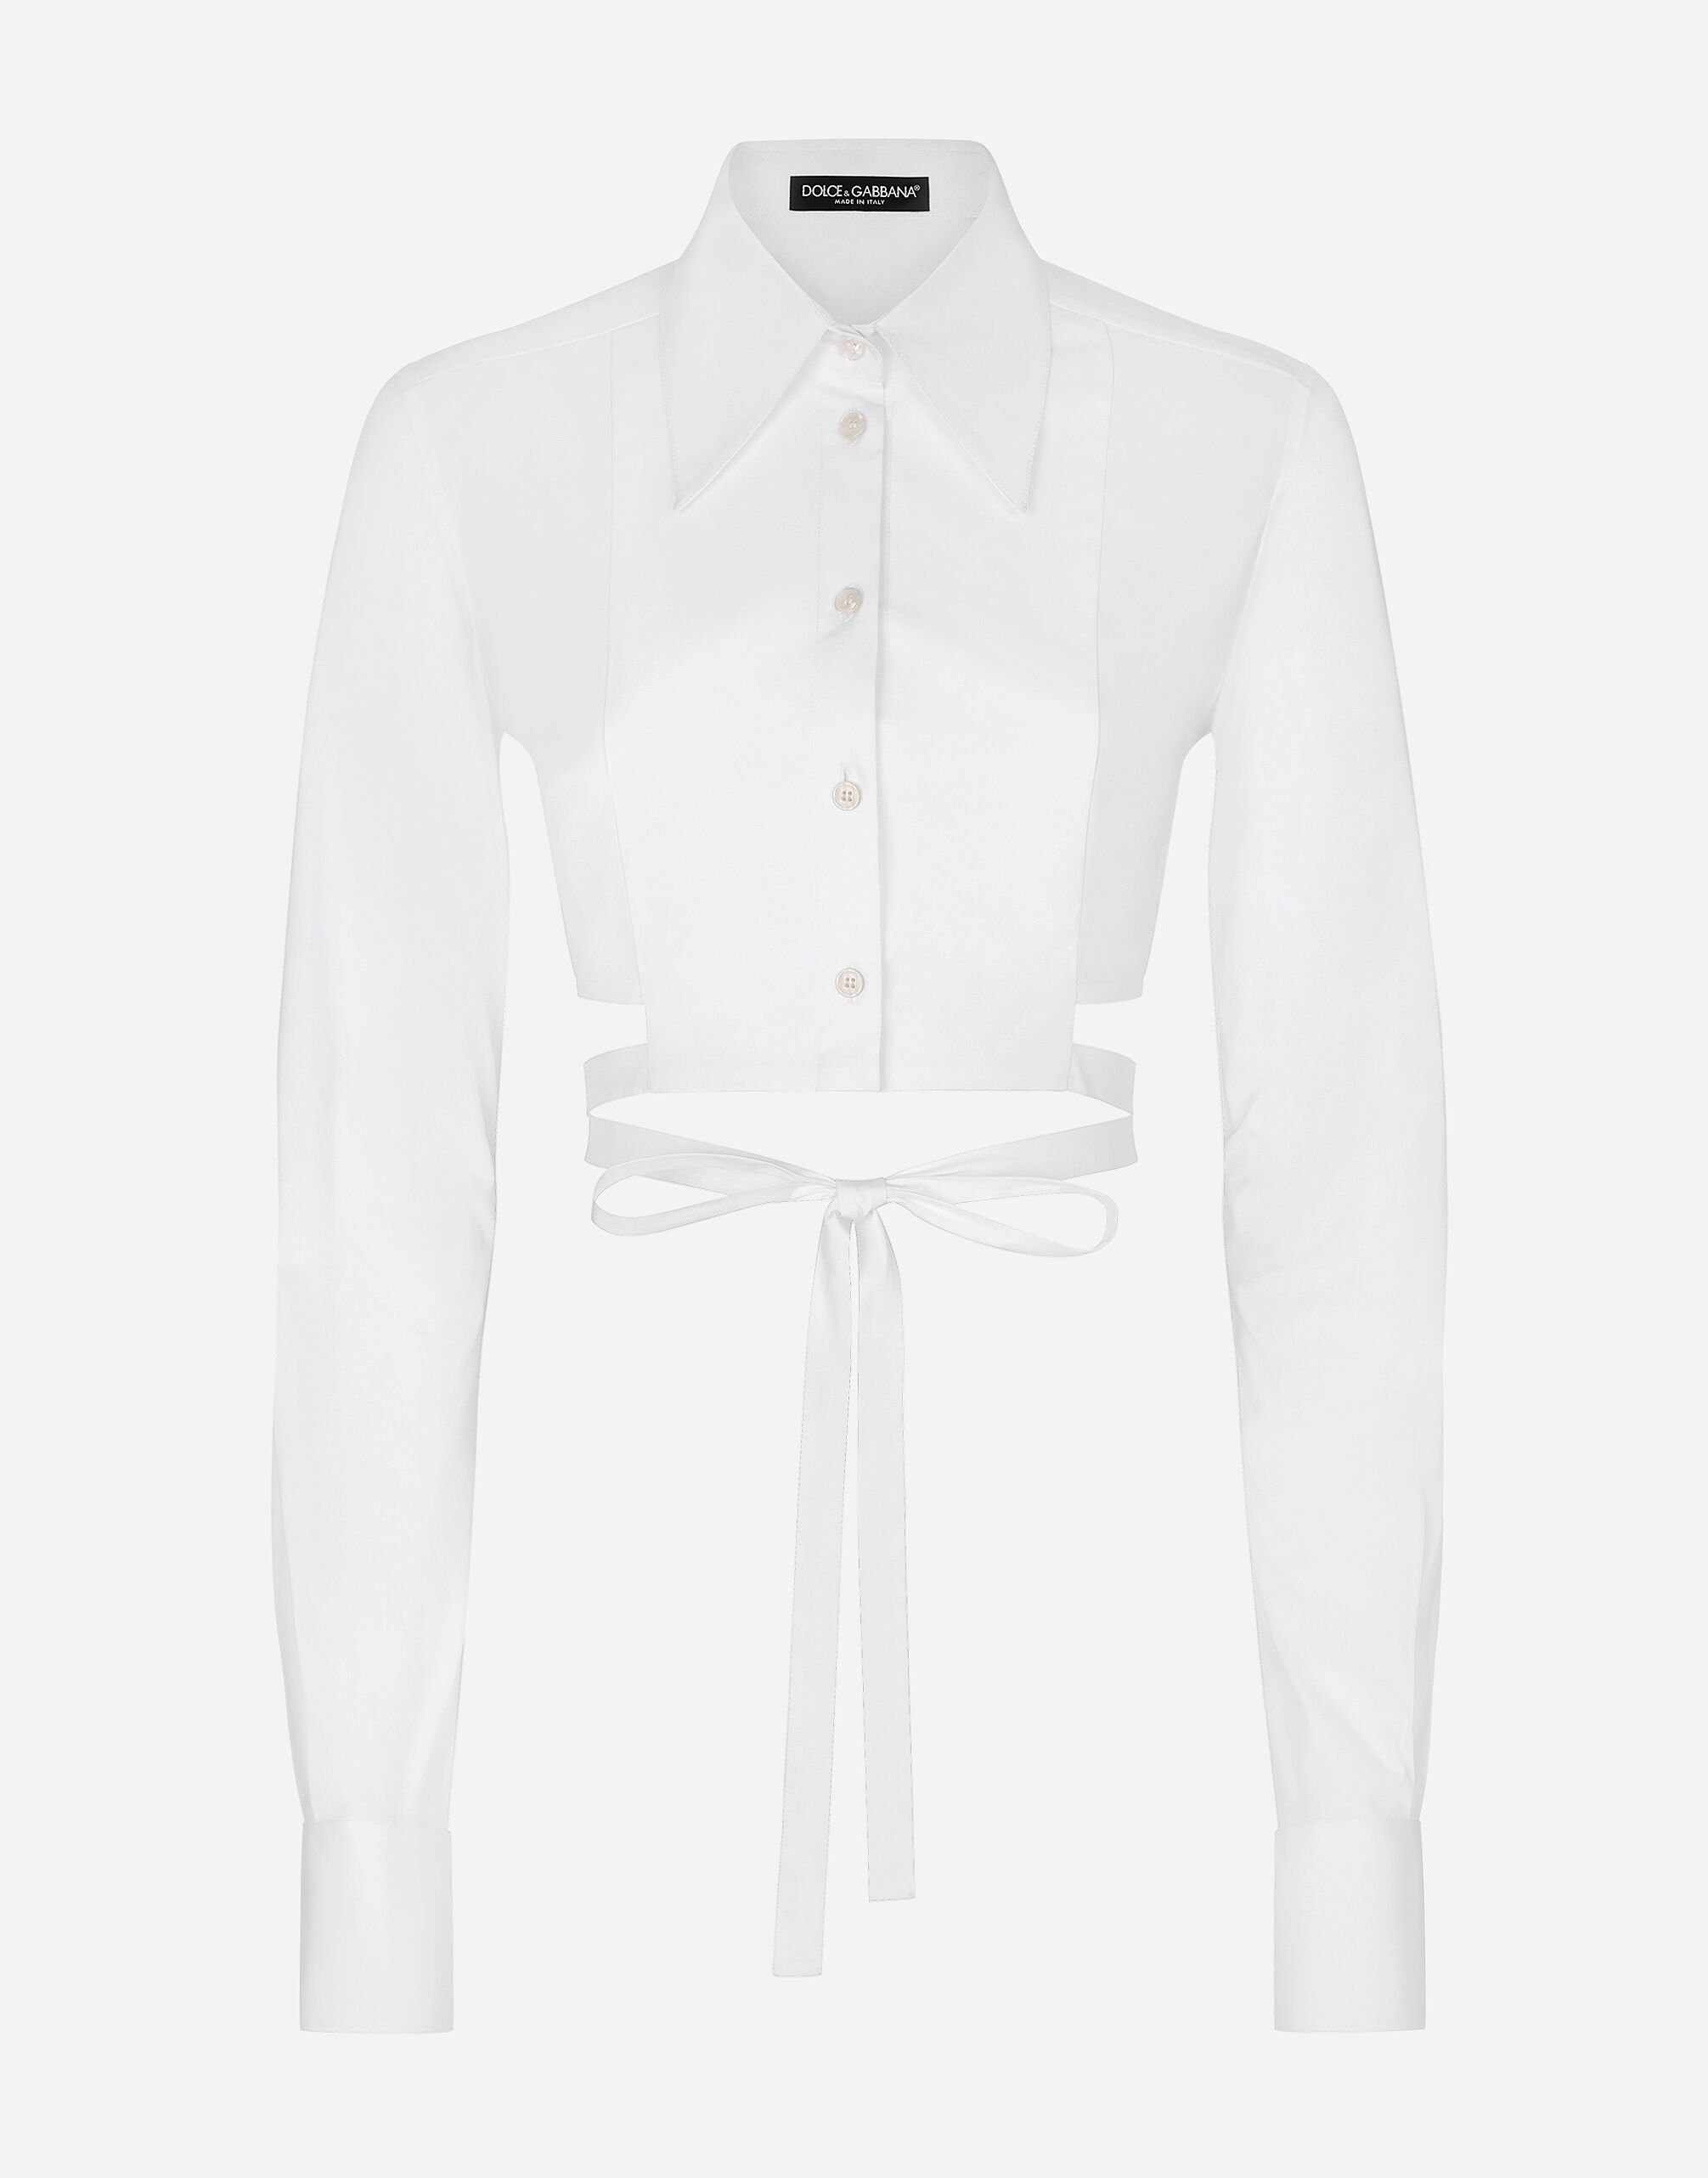 Dolce & Gabbana Camisa corta de algodón con cordones cruzados Imprima F79FOTFSA64